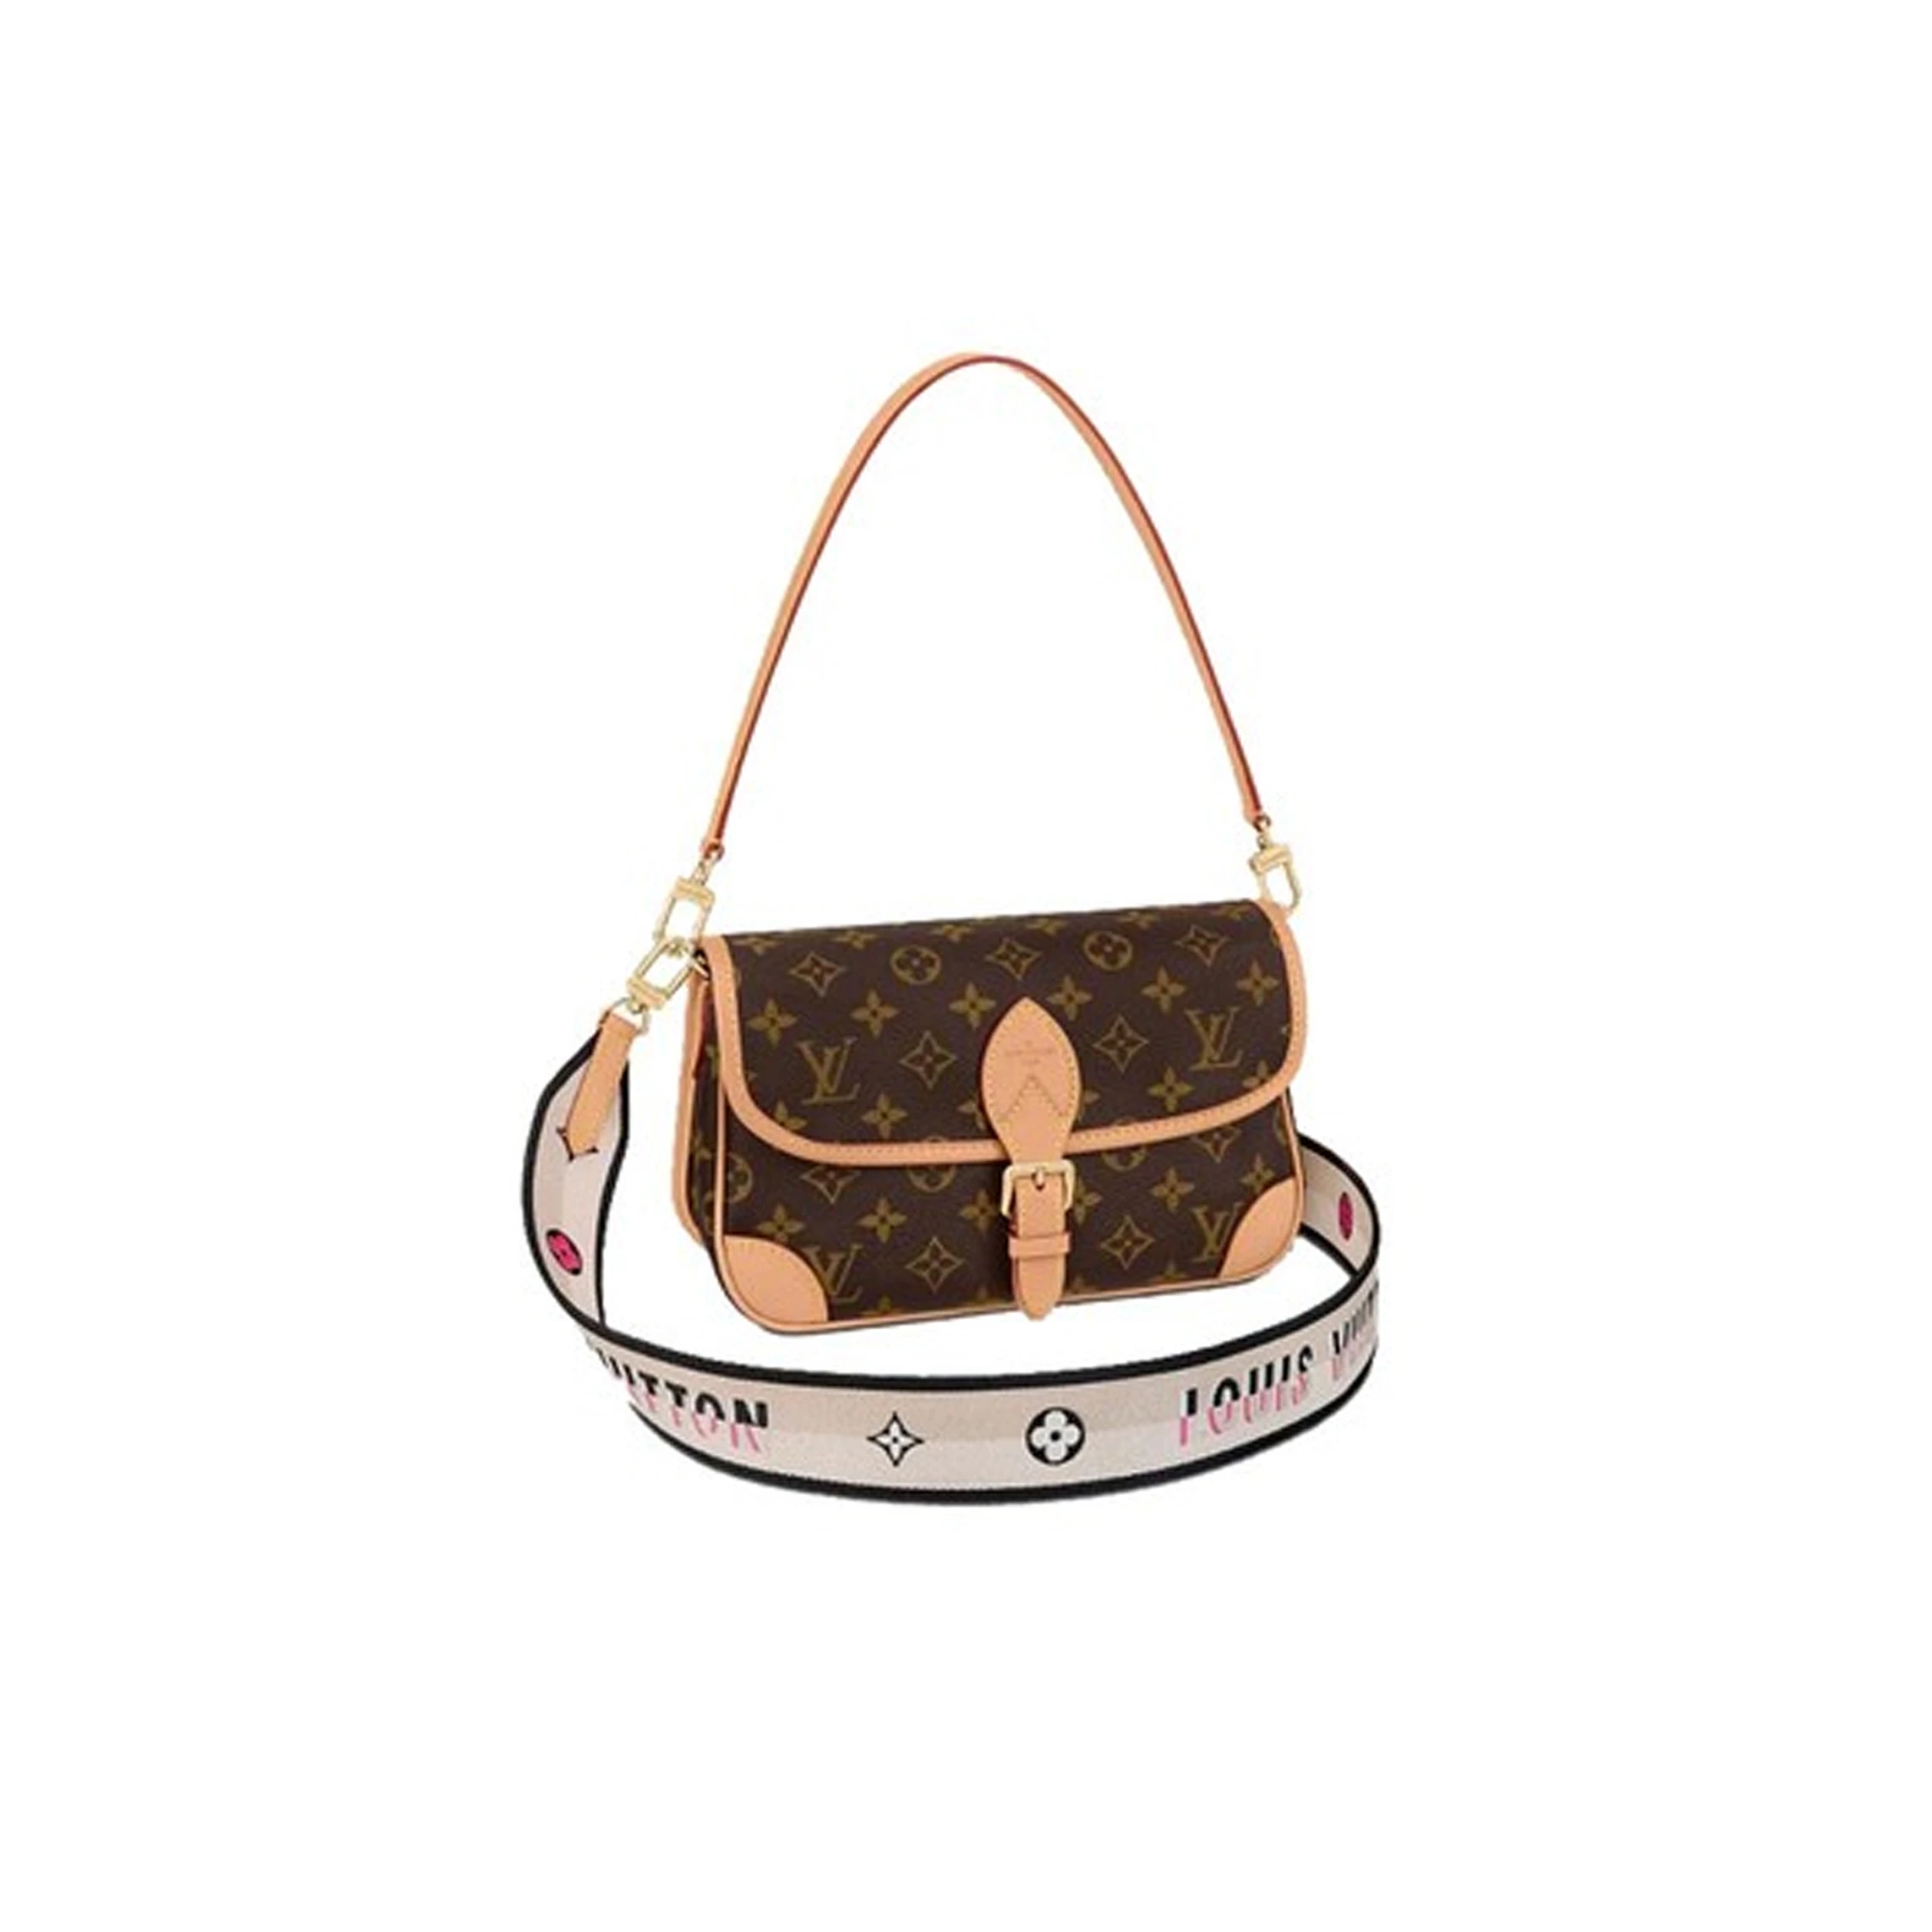 推荐Louis Vuitton/路易威登 DIANE 女士手袋单肩包双肩带 M45985 送礼好物��商品